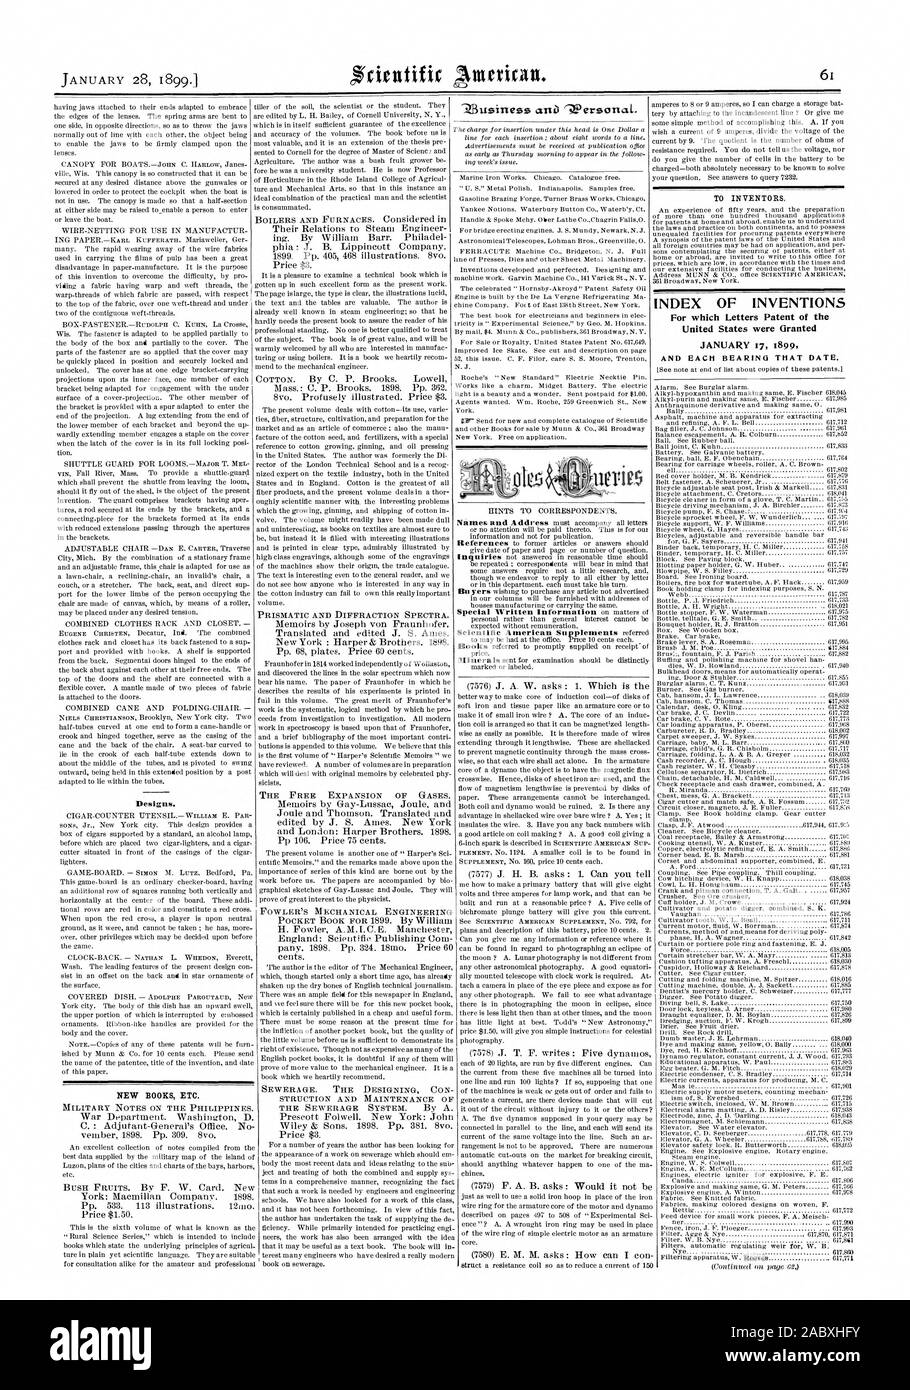 A los inventores. Índice de las invenciones para cuya patente de letras de los Estados Unidos fueron otorgadas el 17 de enero de 1899 nuevos libros etc., Scientific American, 1899-01-28 Foto de stock